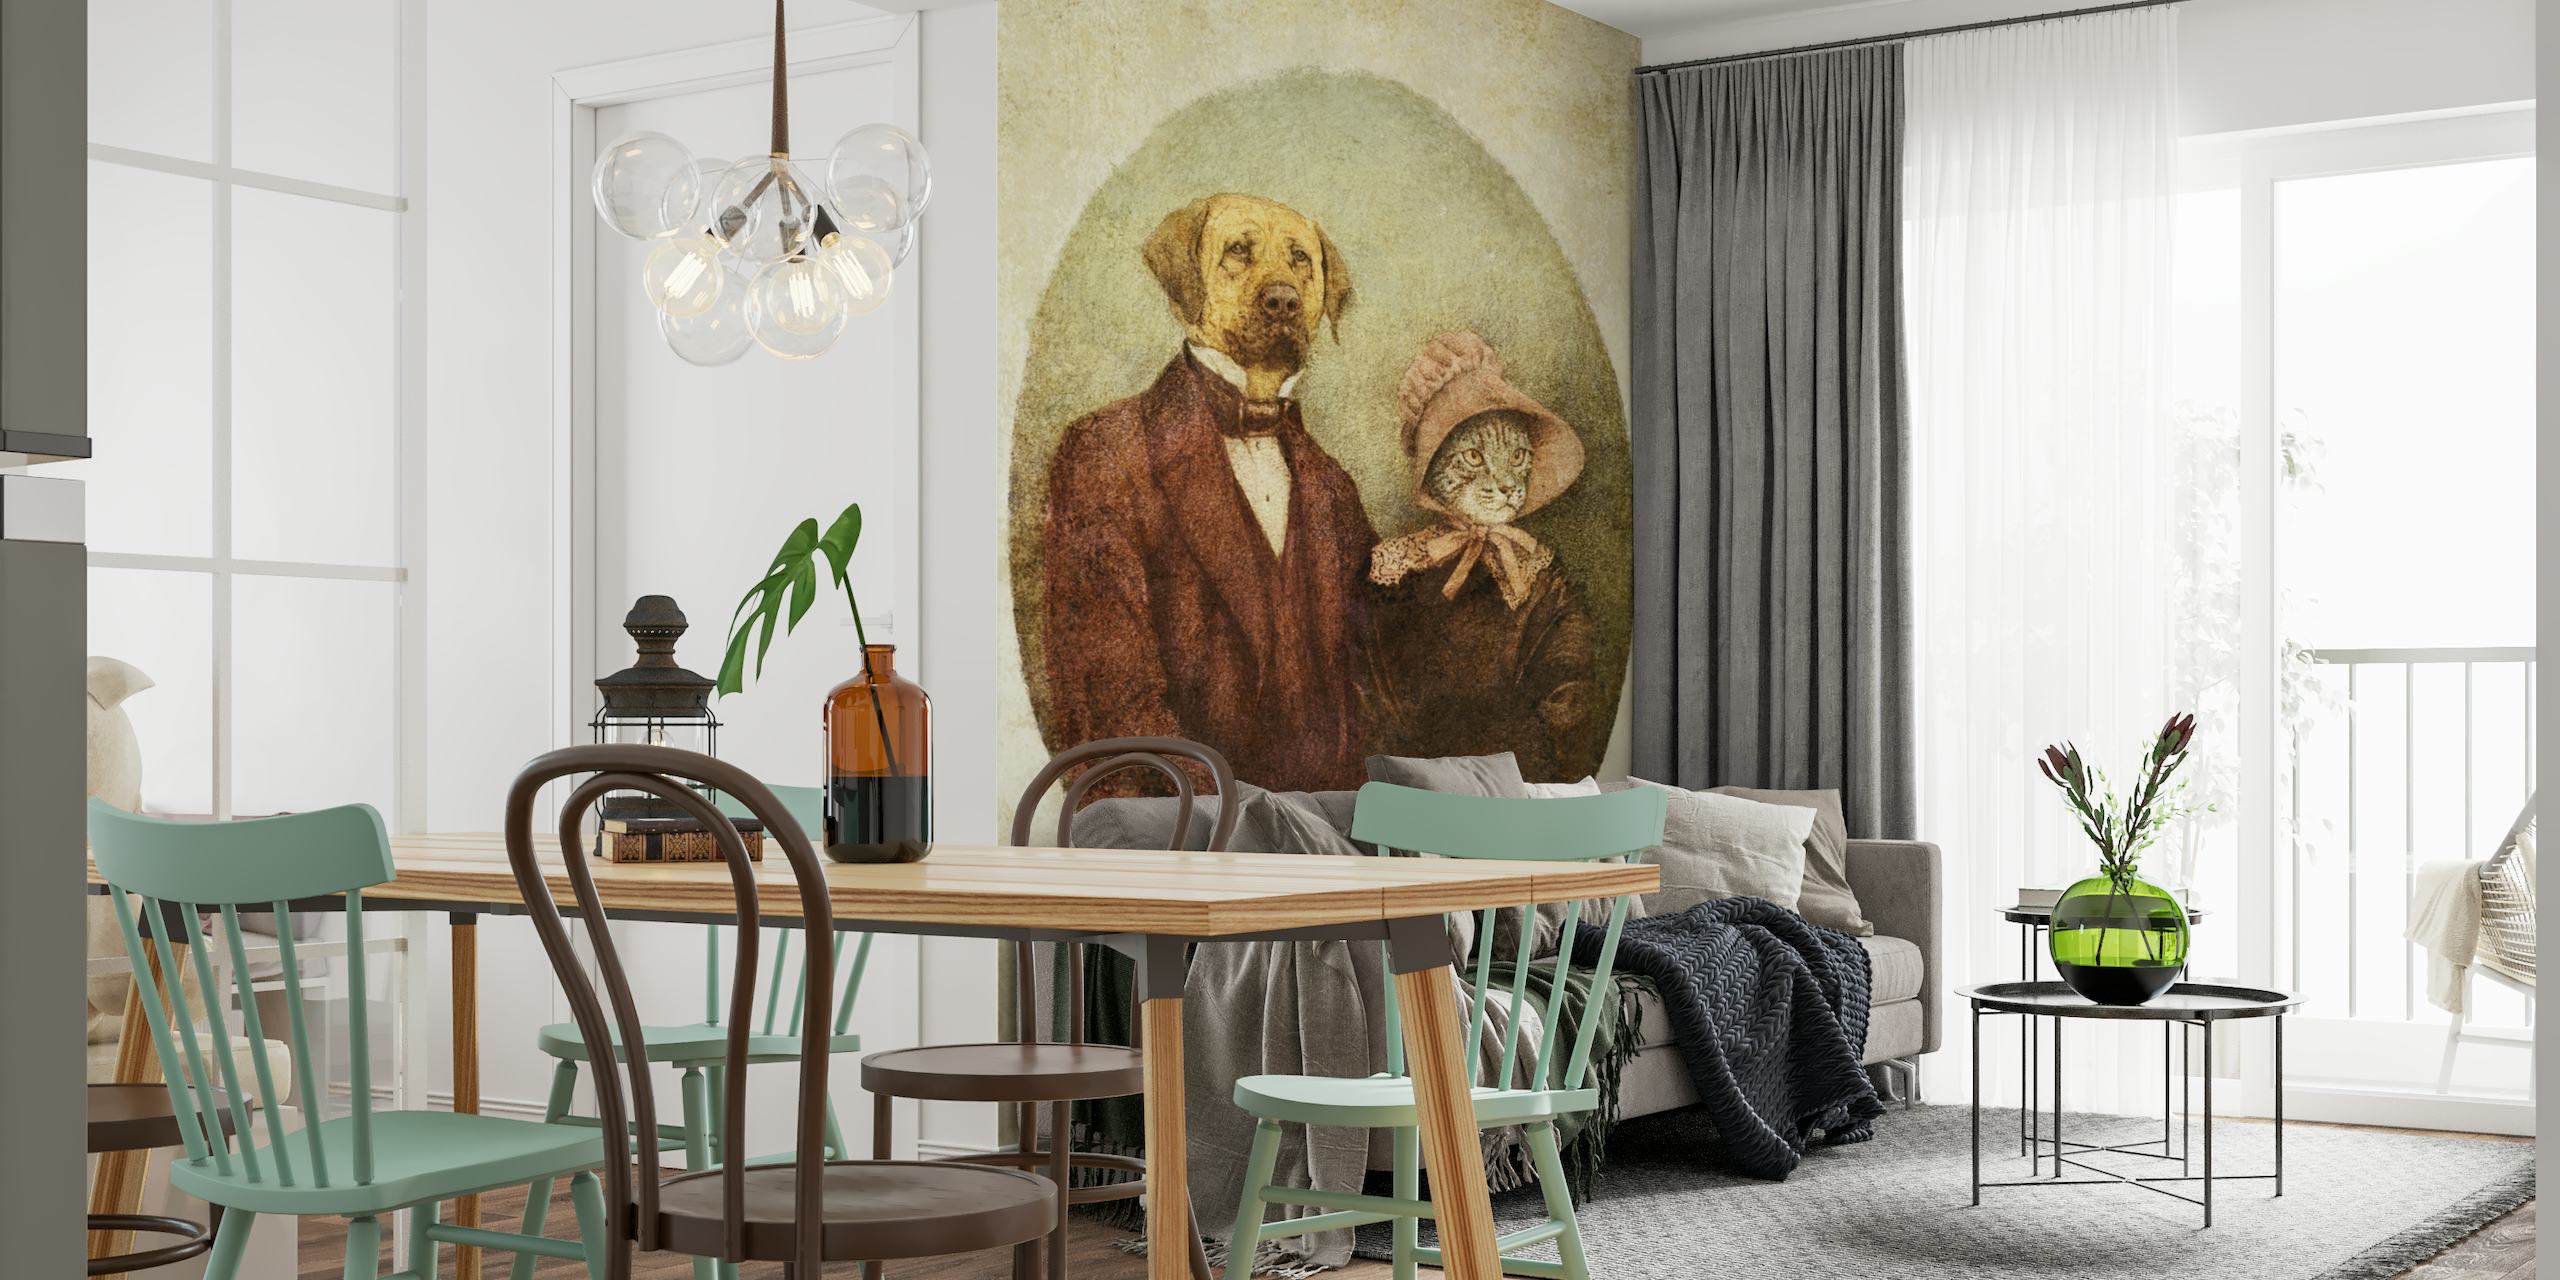 Antropomorf hondenpaar in vintage kledij muurschildering